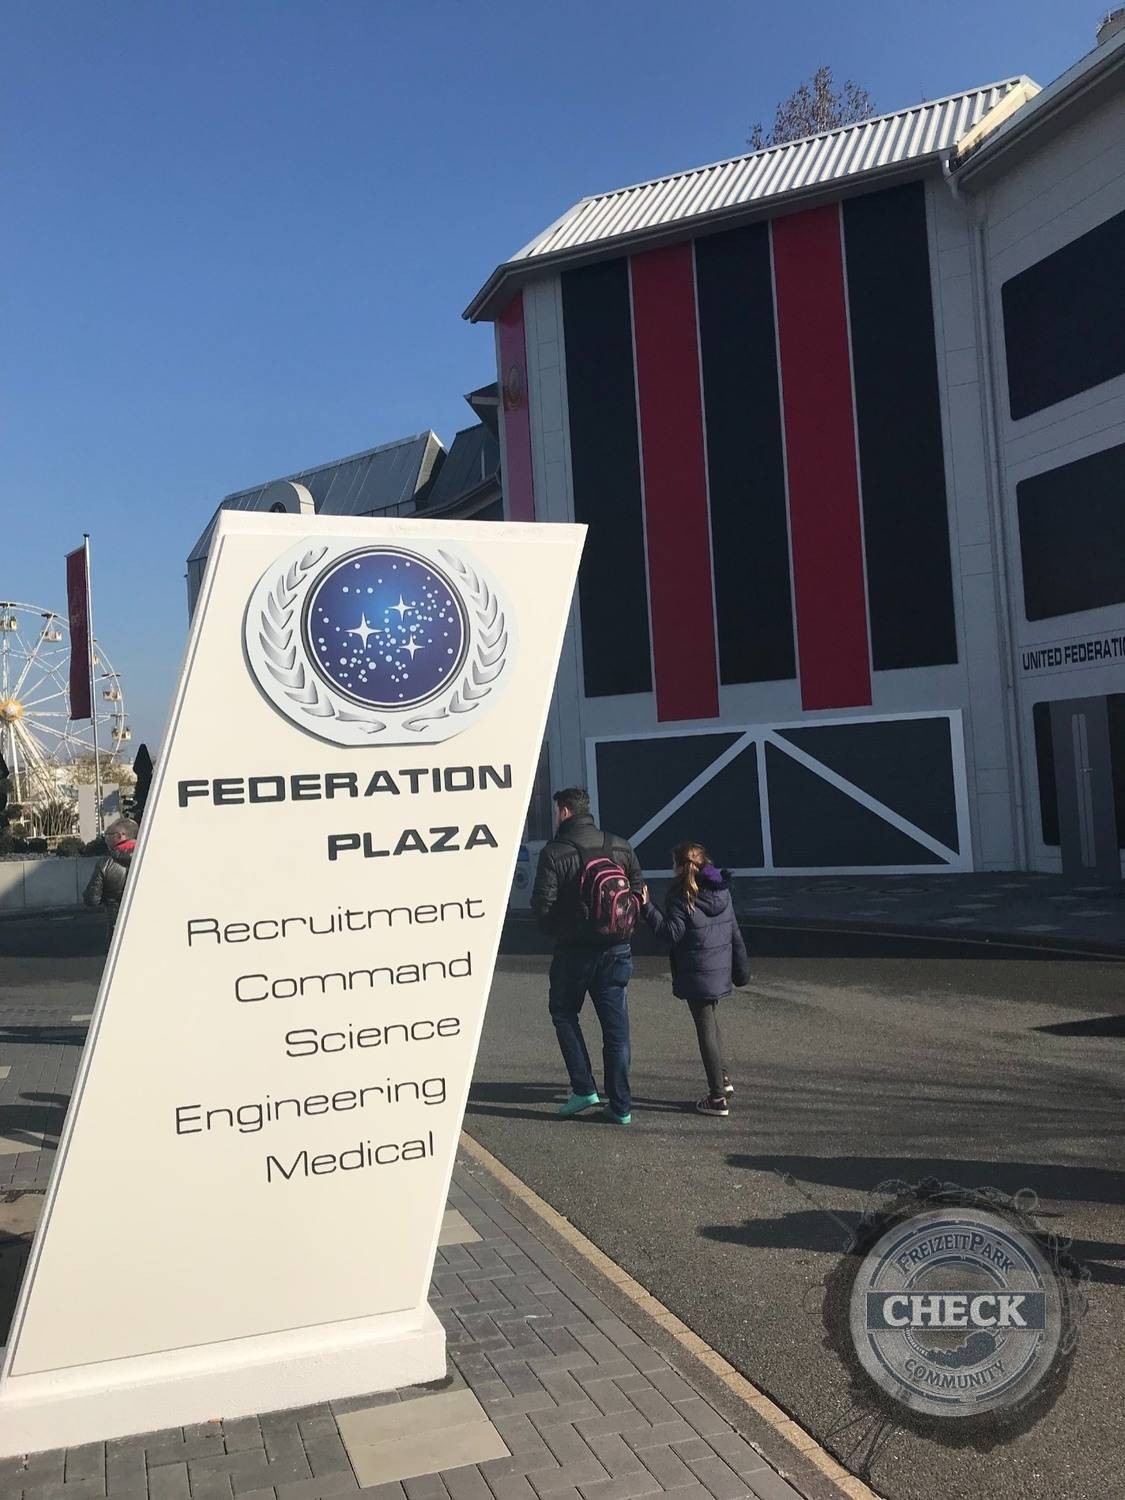 Shopping - Federation Plaza